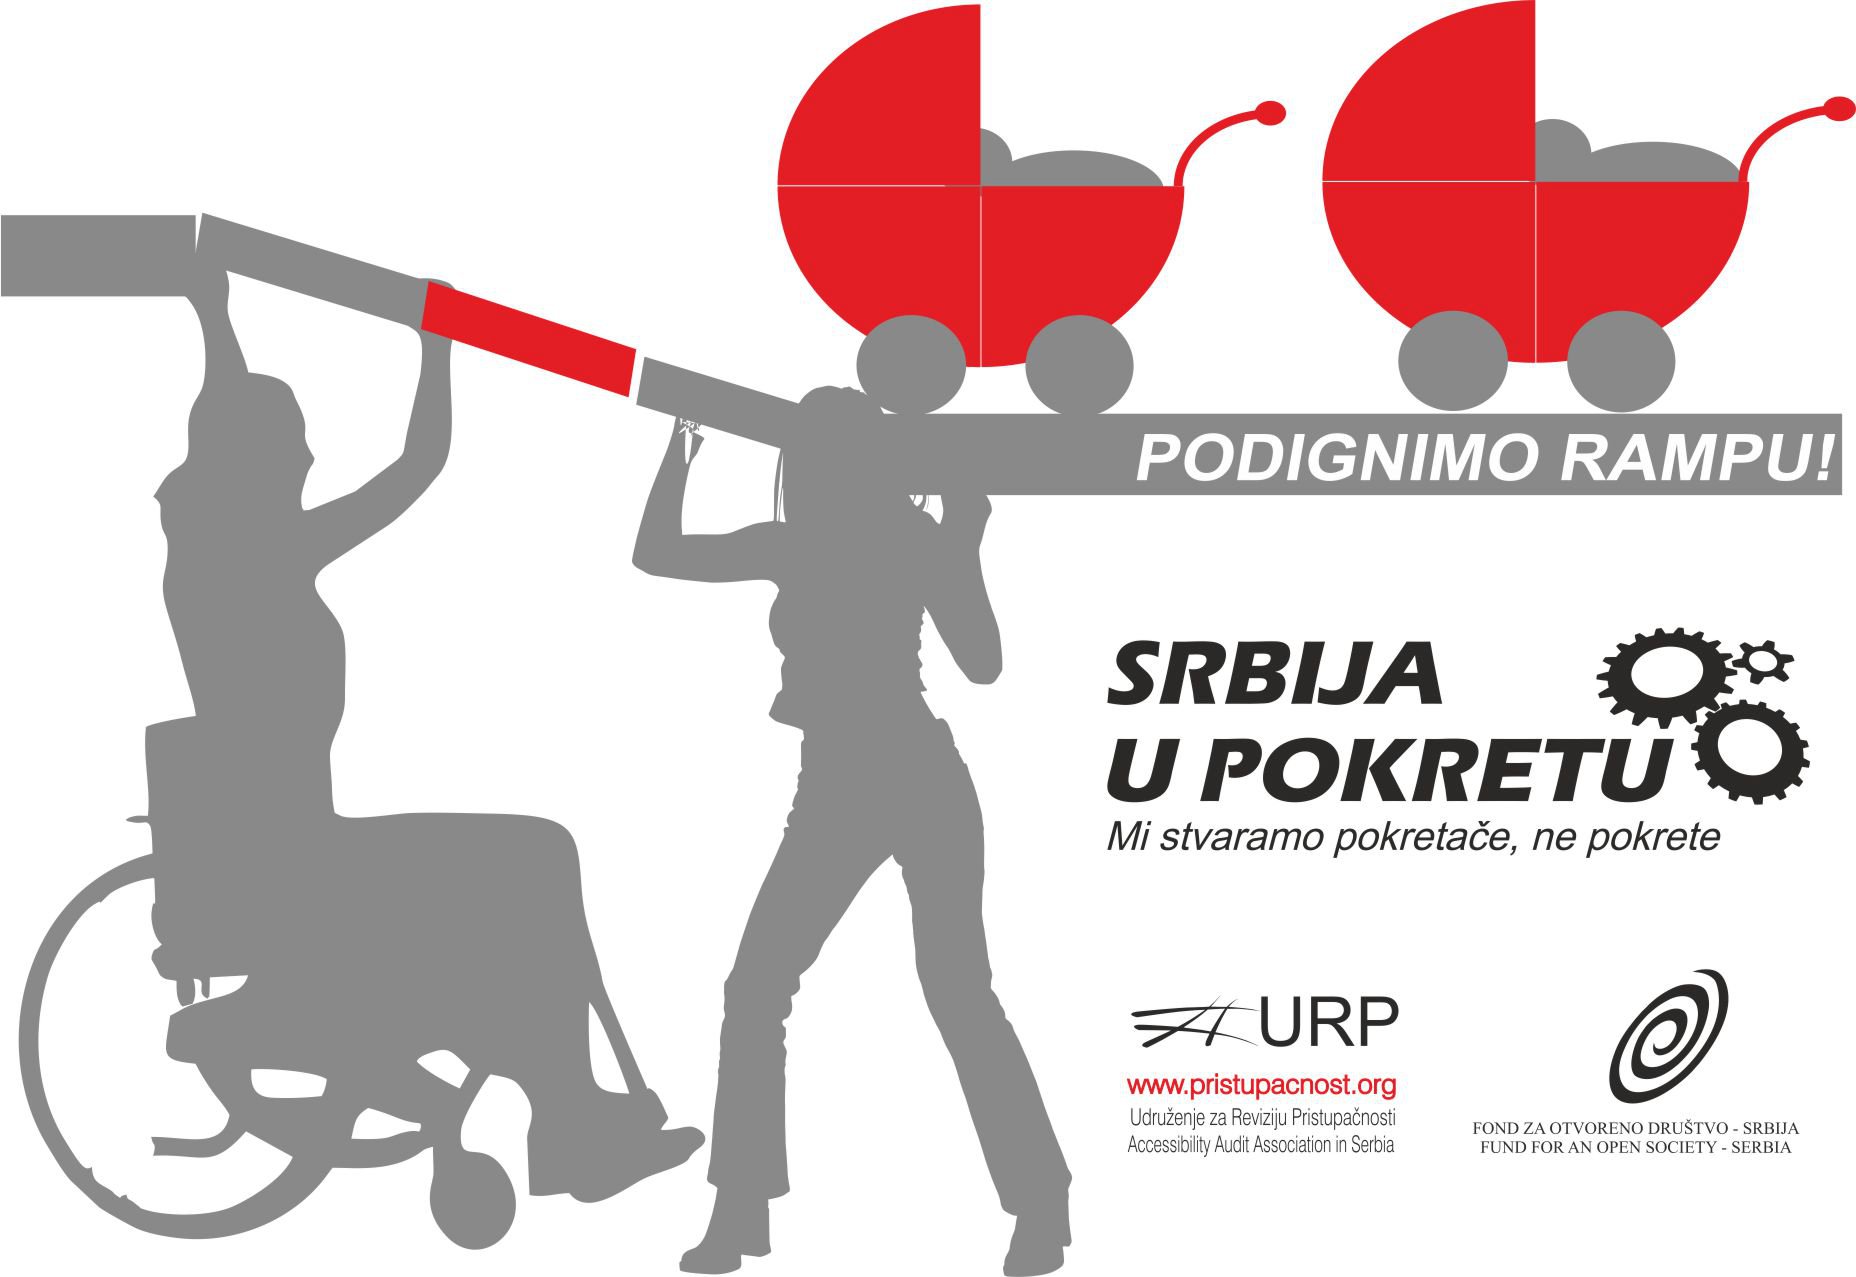 Projekat organizacije "Srbija u pokretu" PODIGNIMO RAMPU!